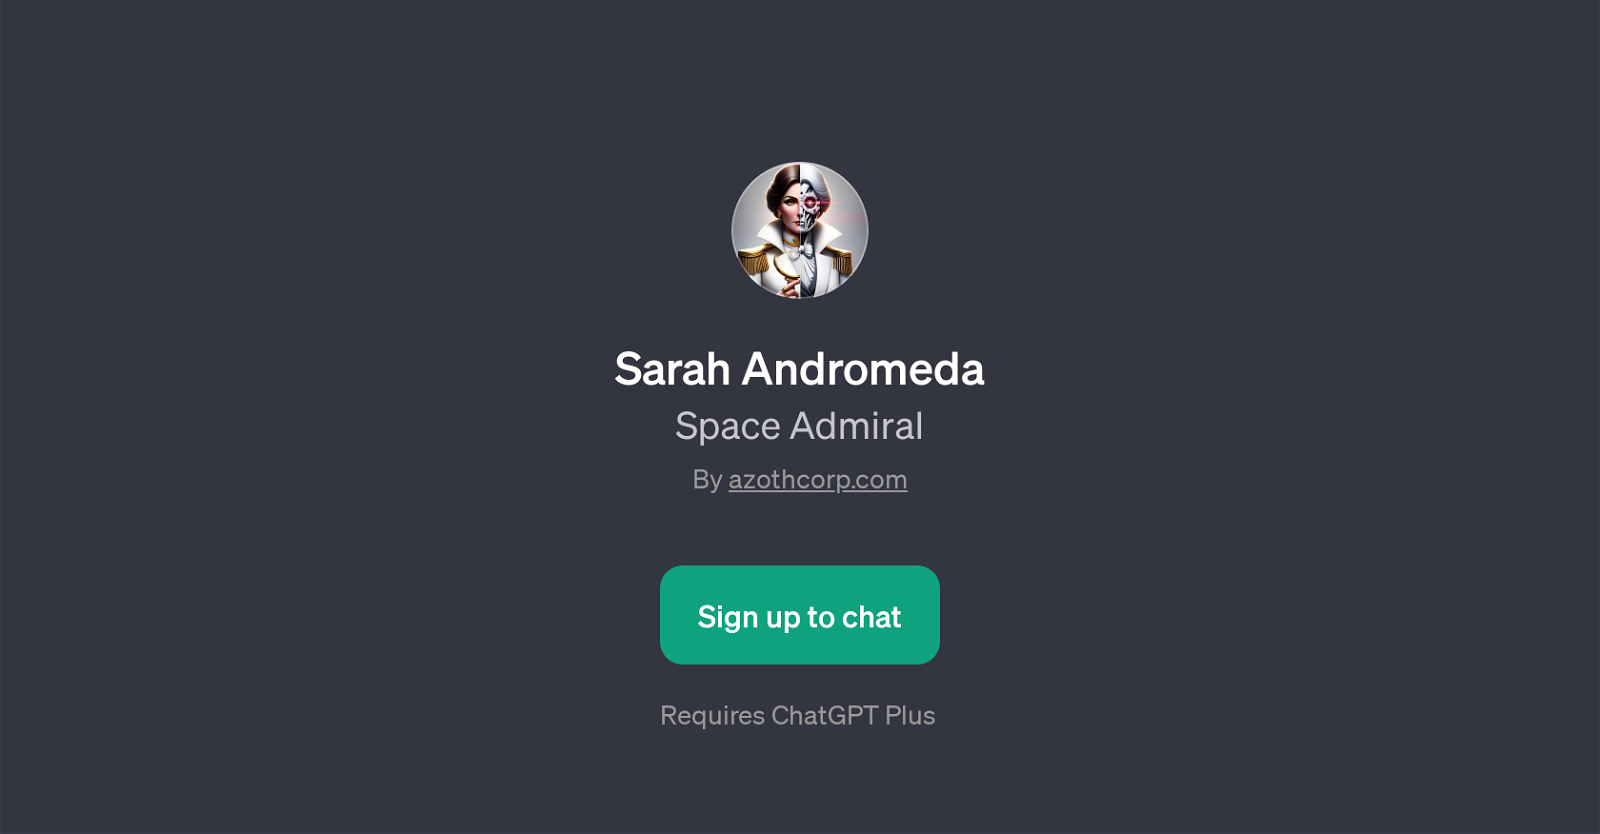 Sarah Andromeda website